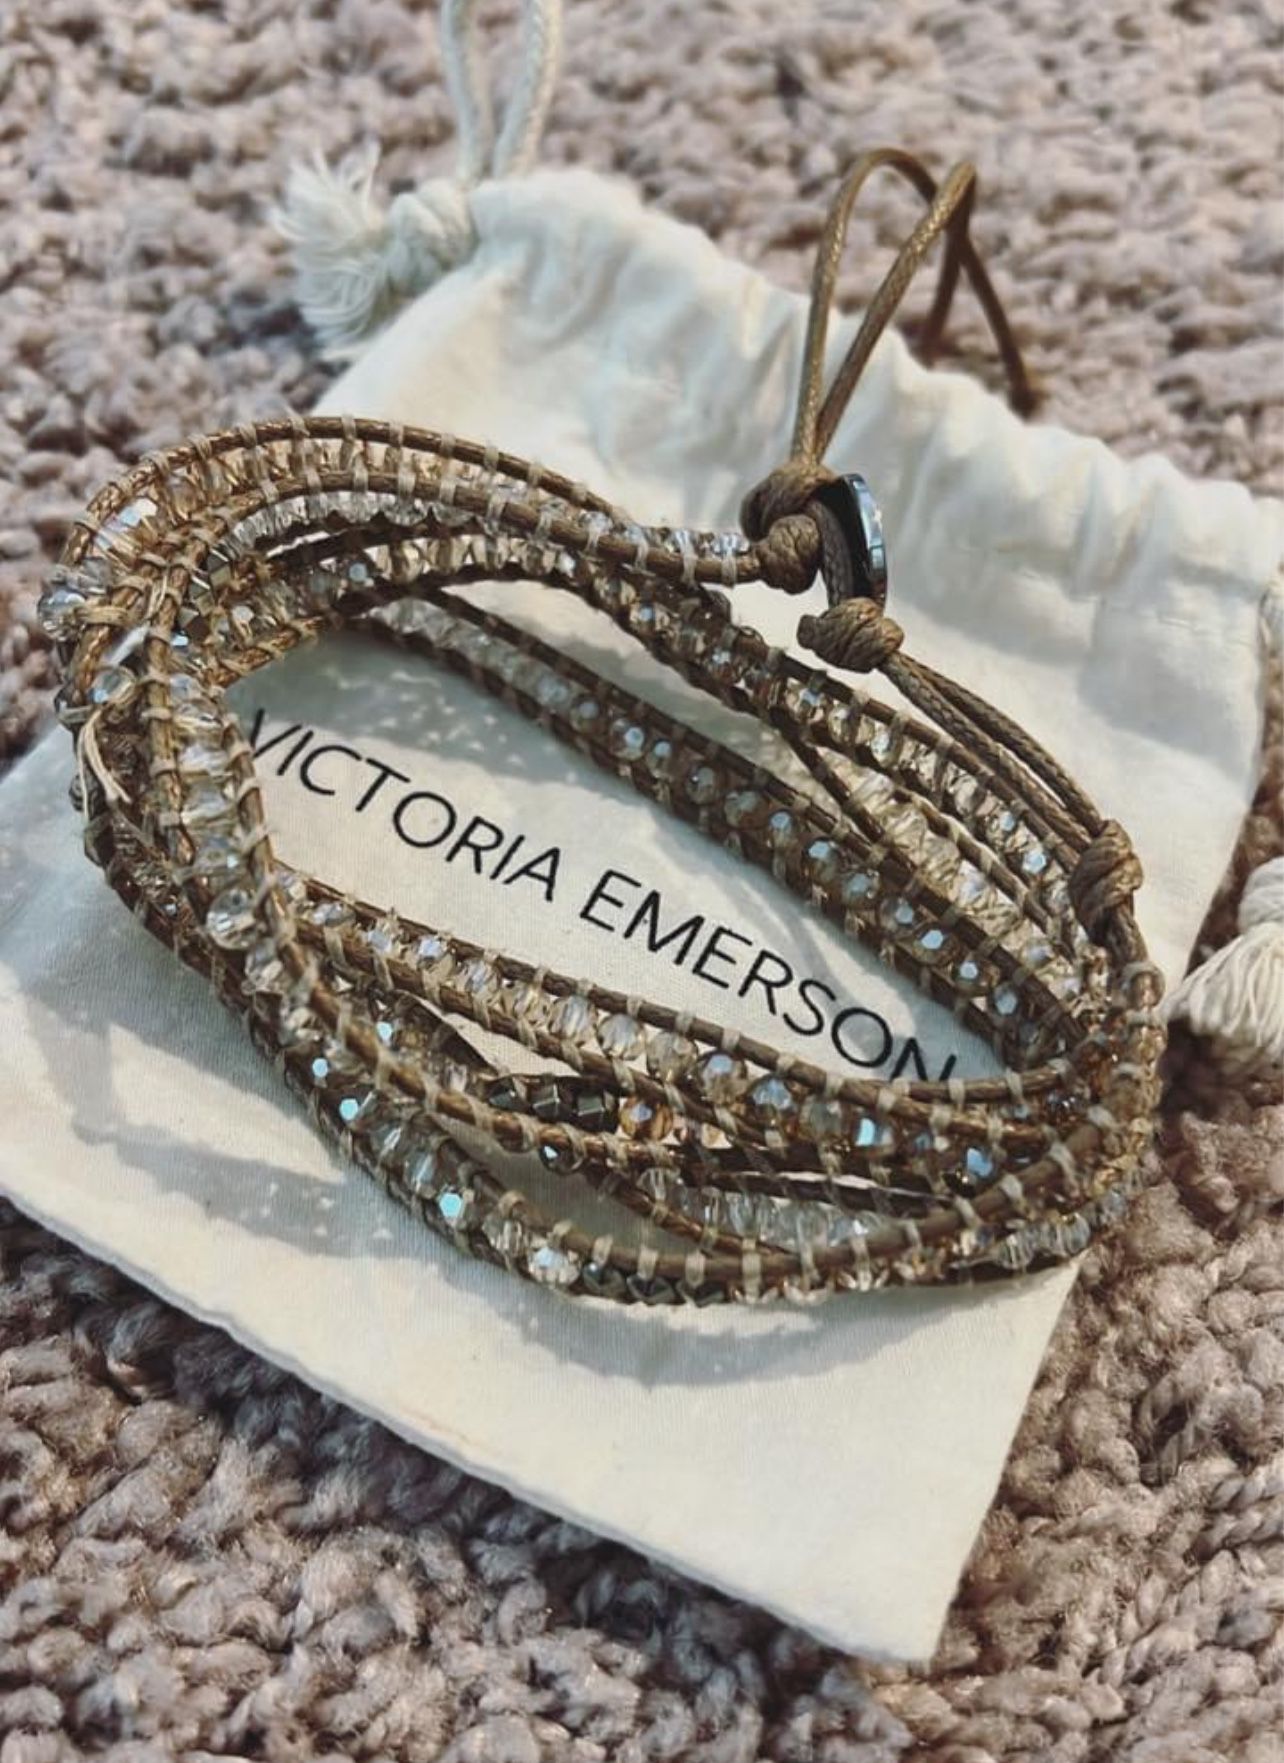 Victoria emerson Wrap Bracelet